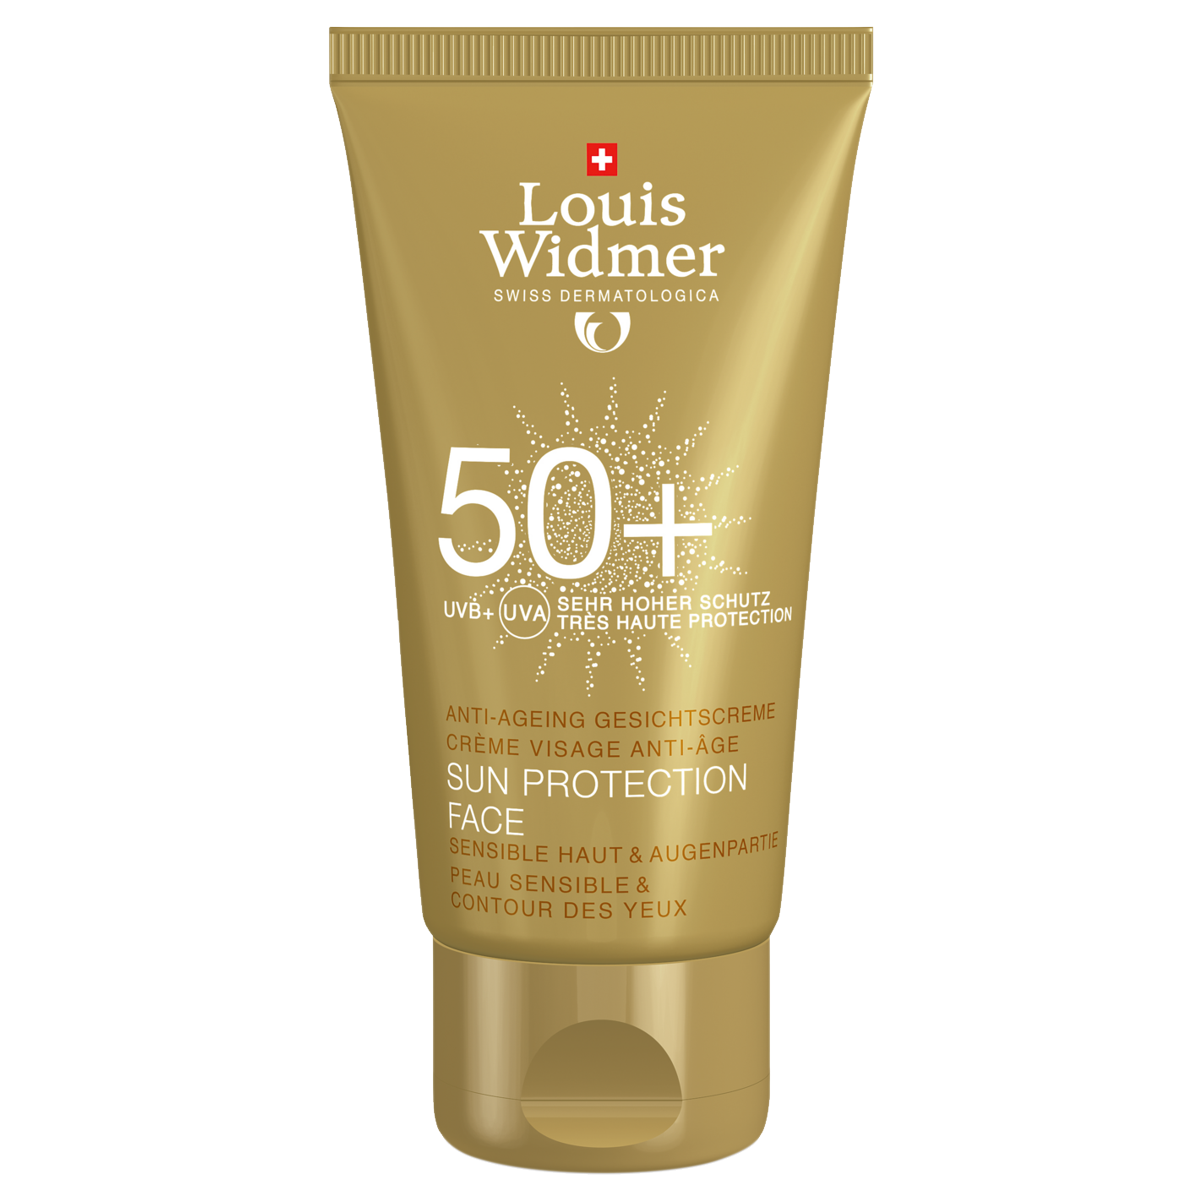 Louis Widmer Sun Protection Face 50 parfümiert 50 ml